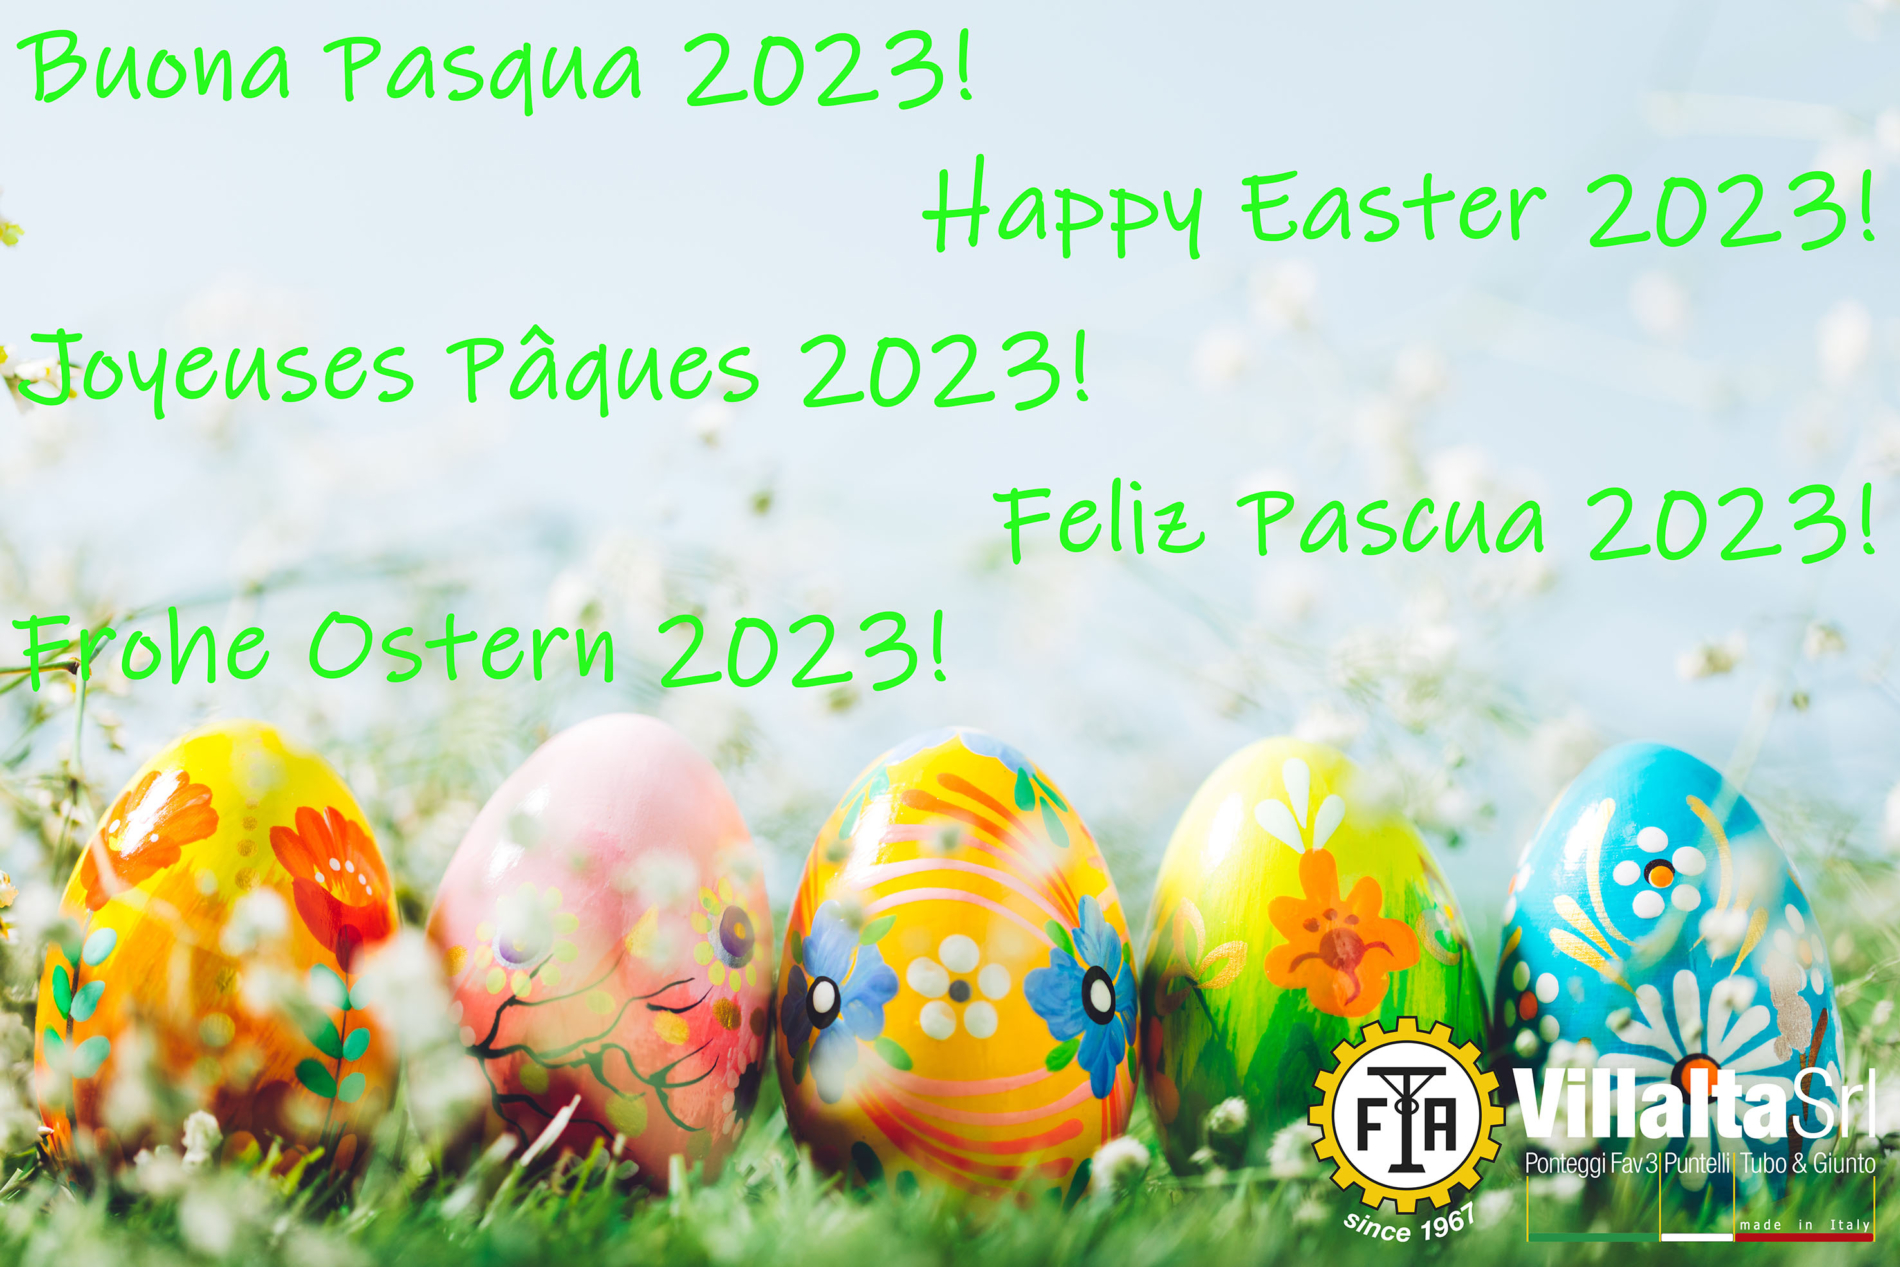 Festività Pasquali 2023 Villalta srl